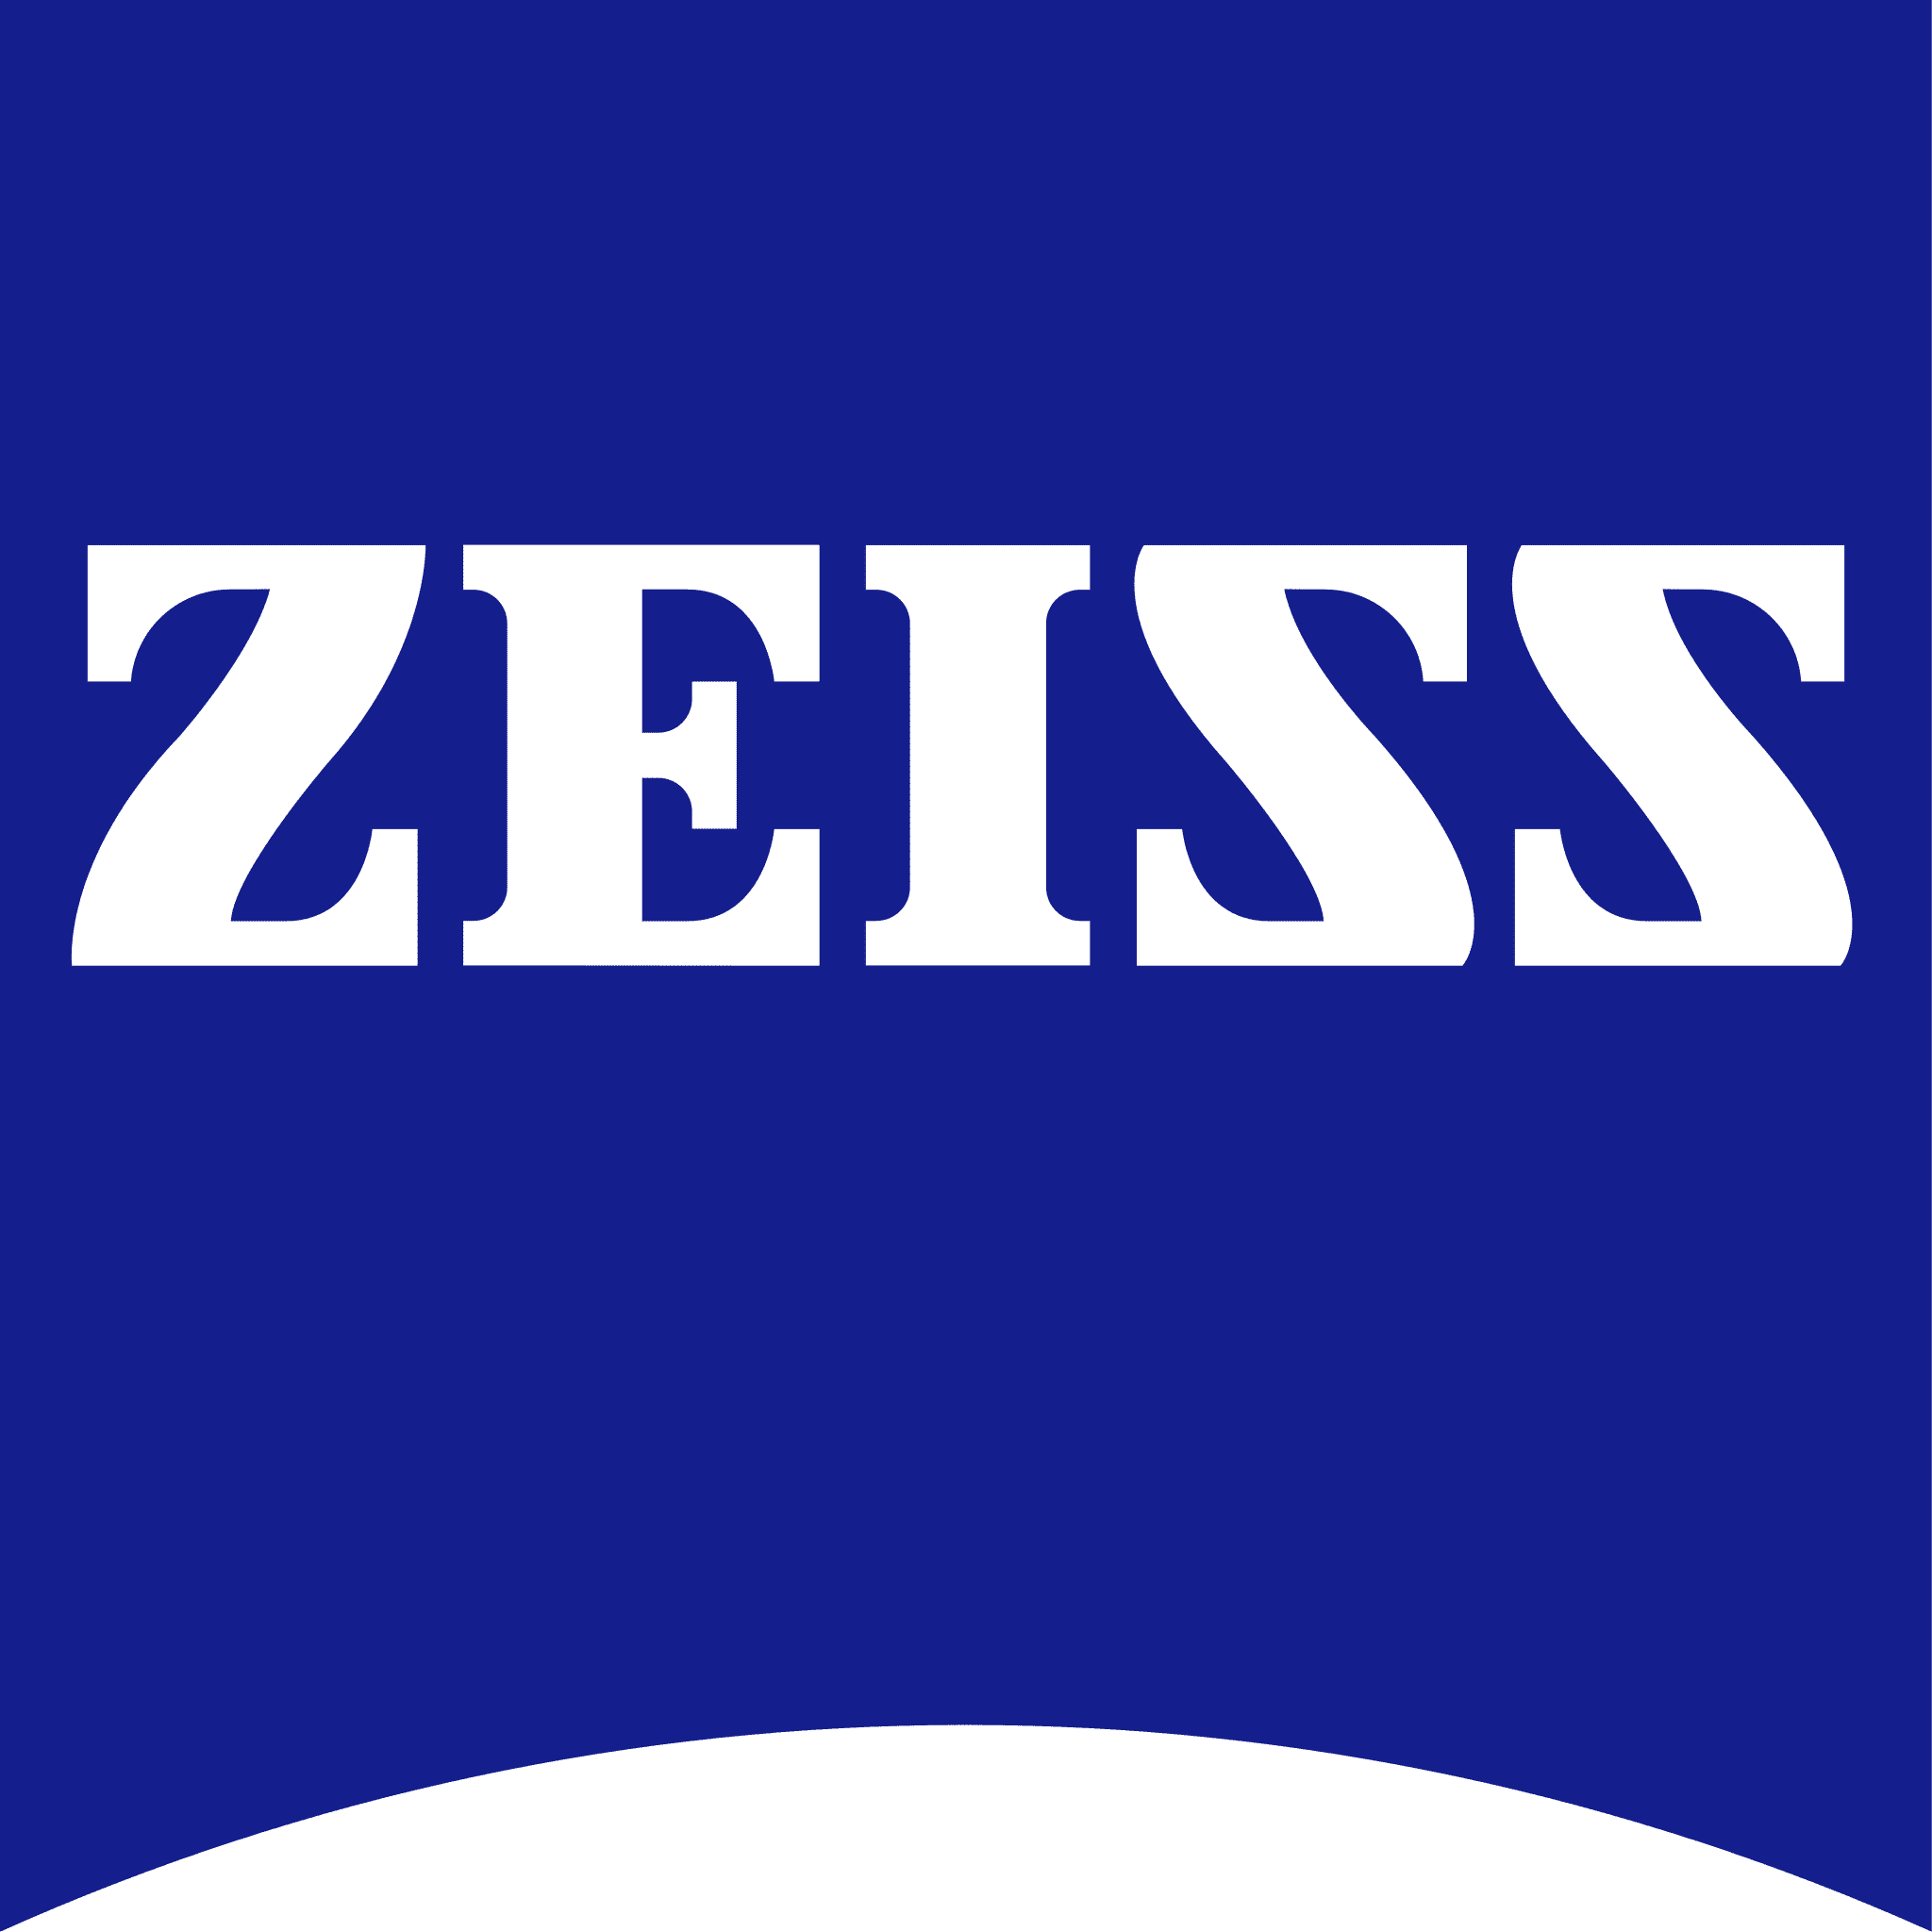 ZEISS